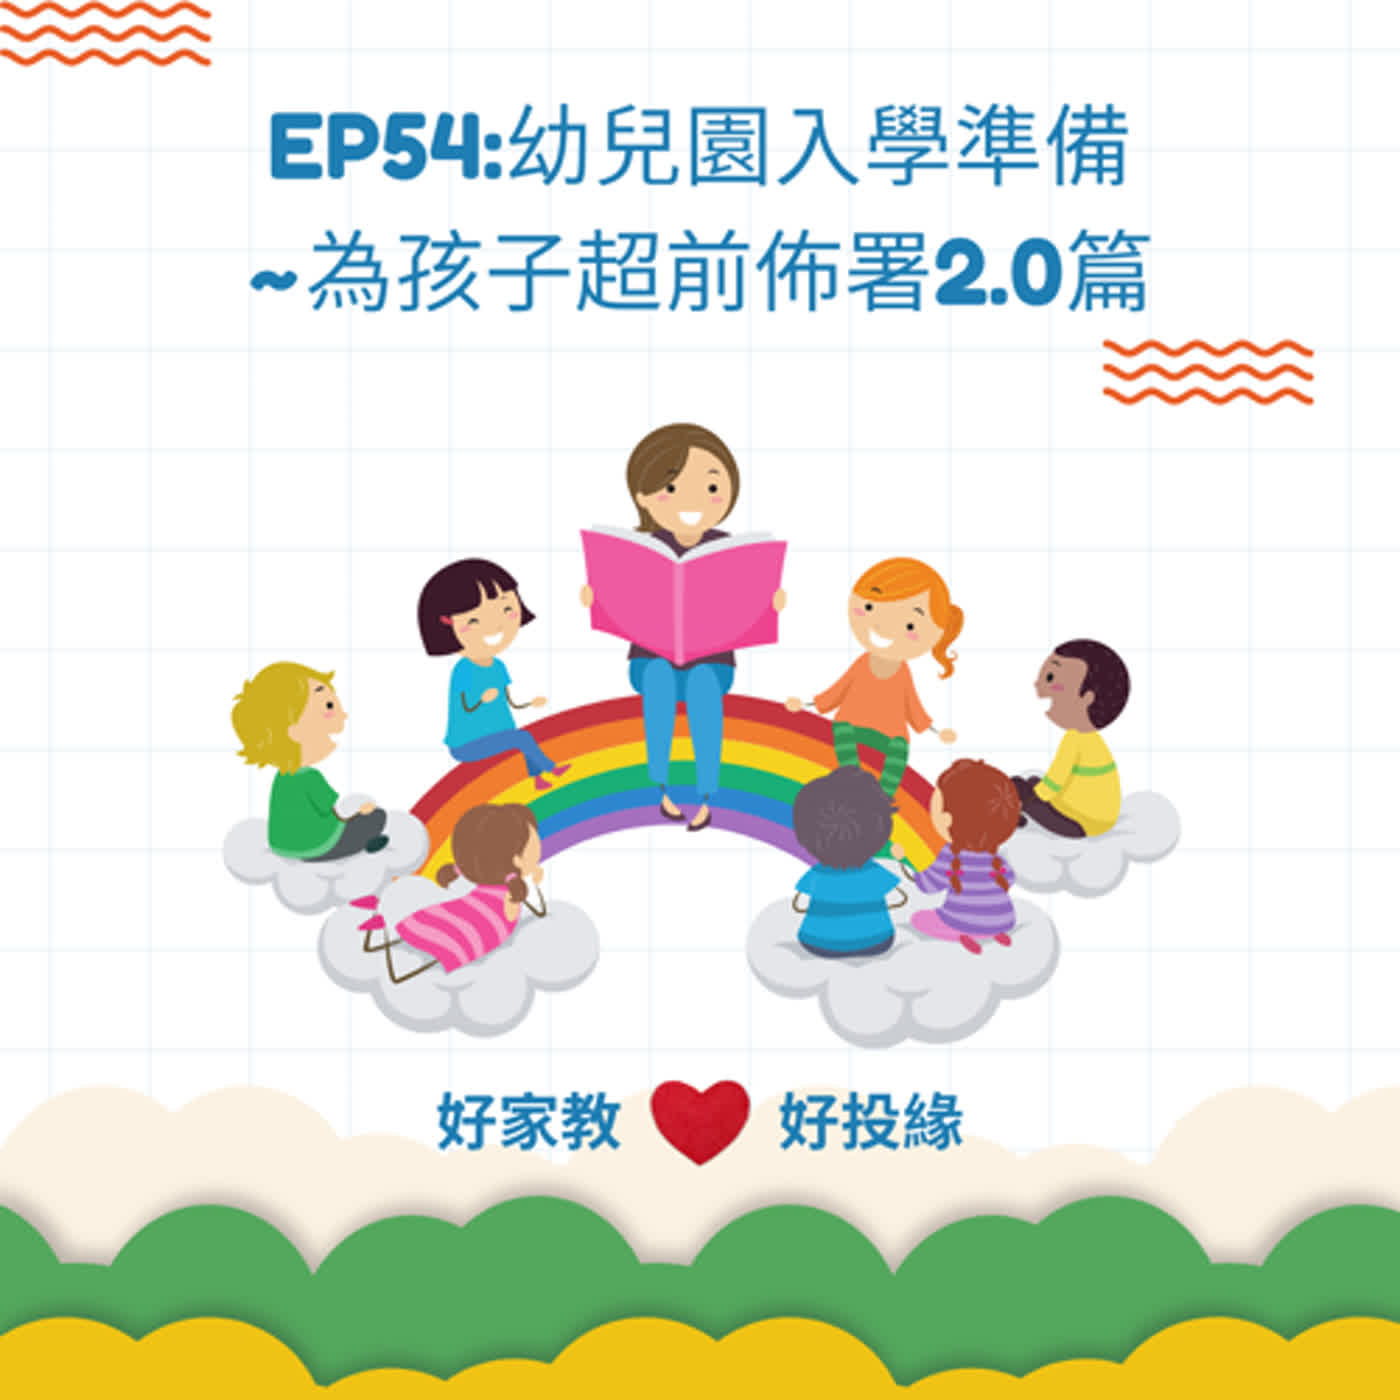 EP54:幼兒園入學準備~為孩子超前佈署2.0篇